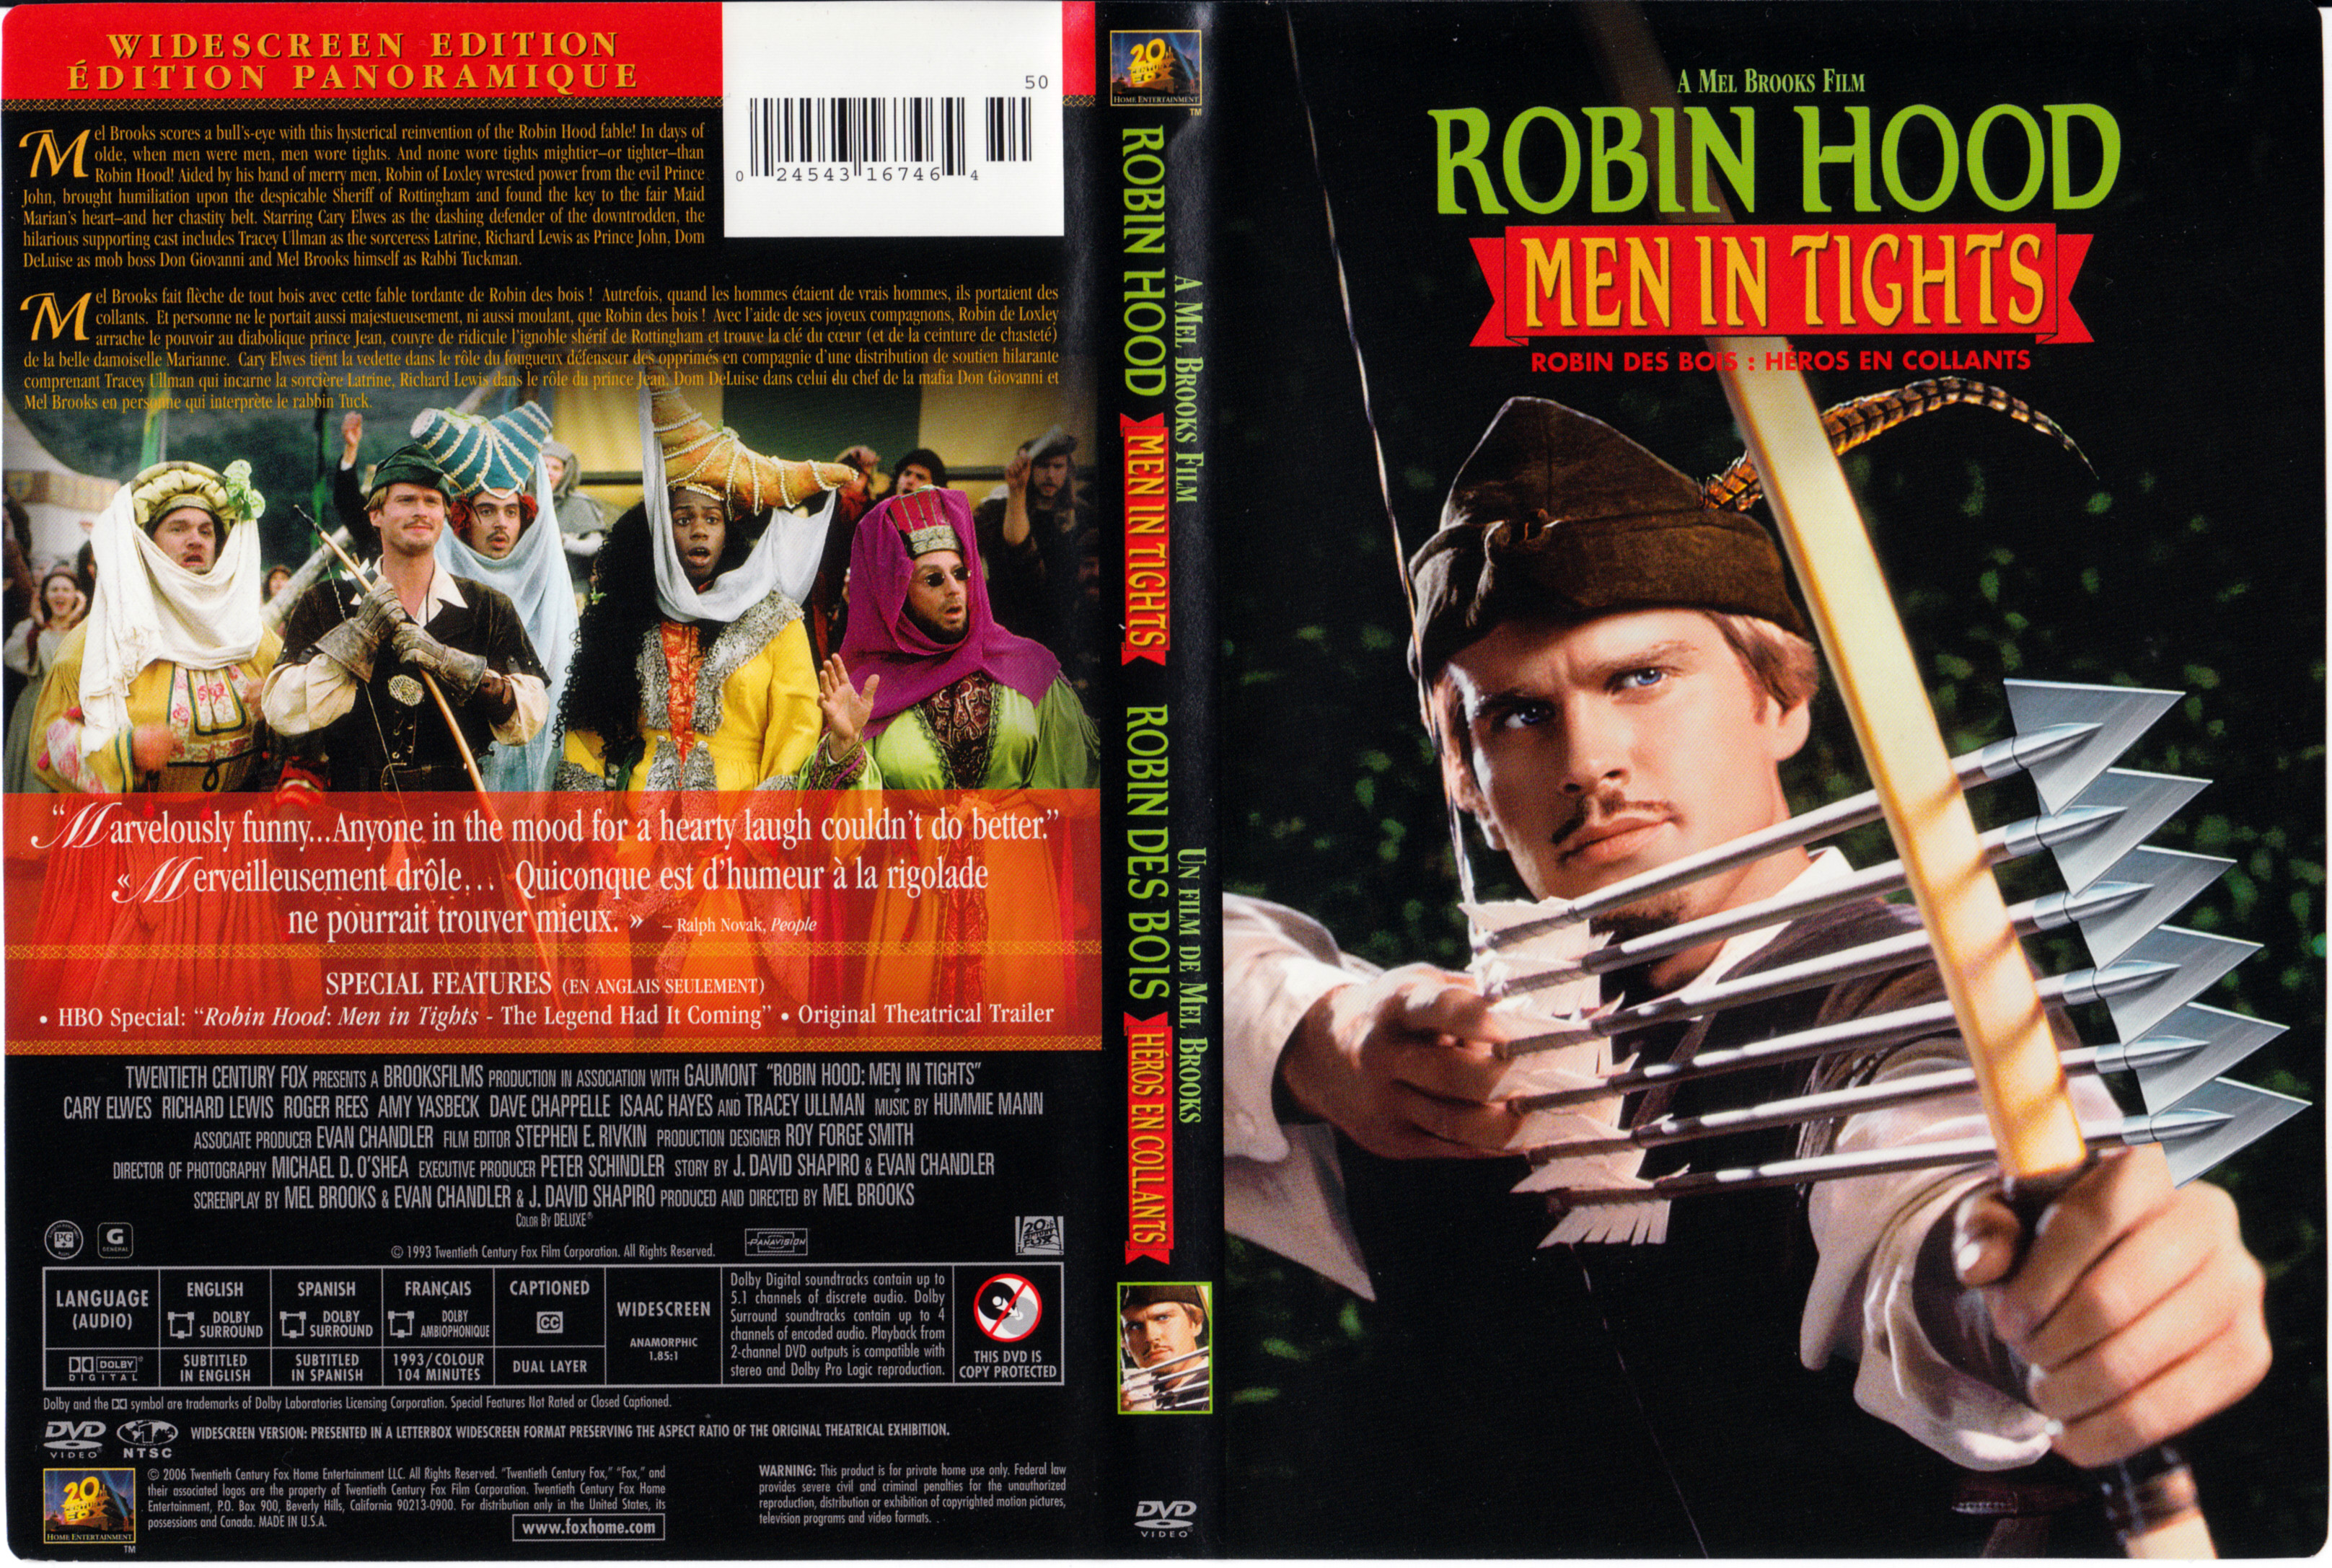 Jaquette DVD Robin Hood Men in tights - Robin des bois Hros en collants (.....